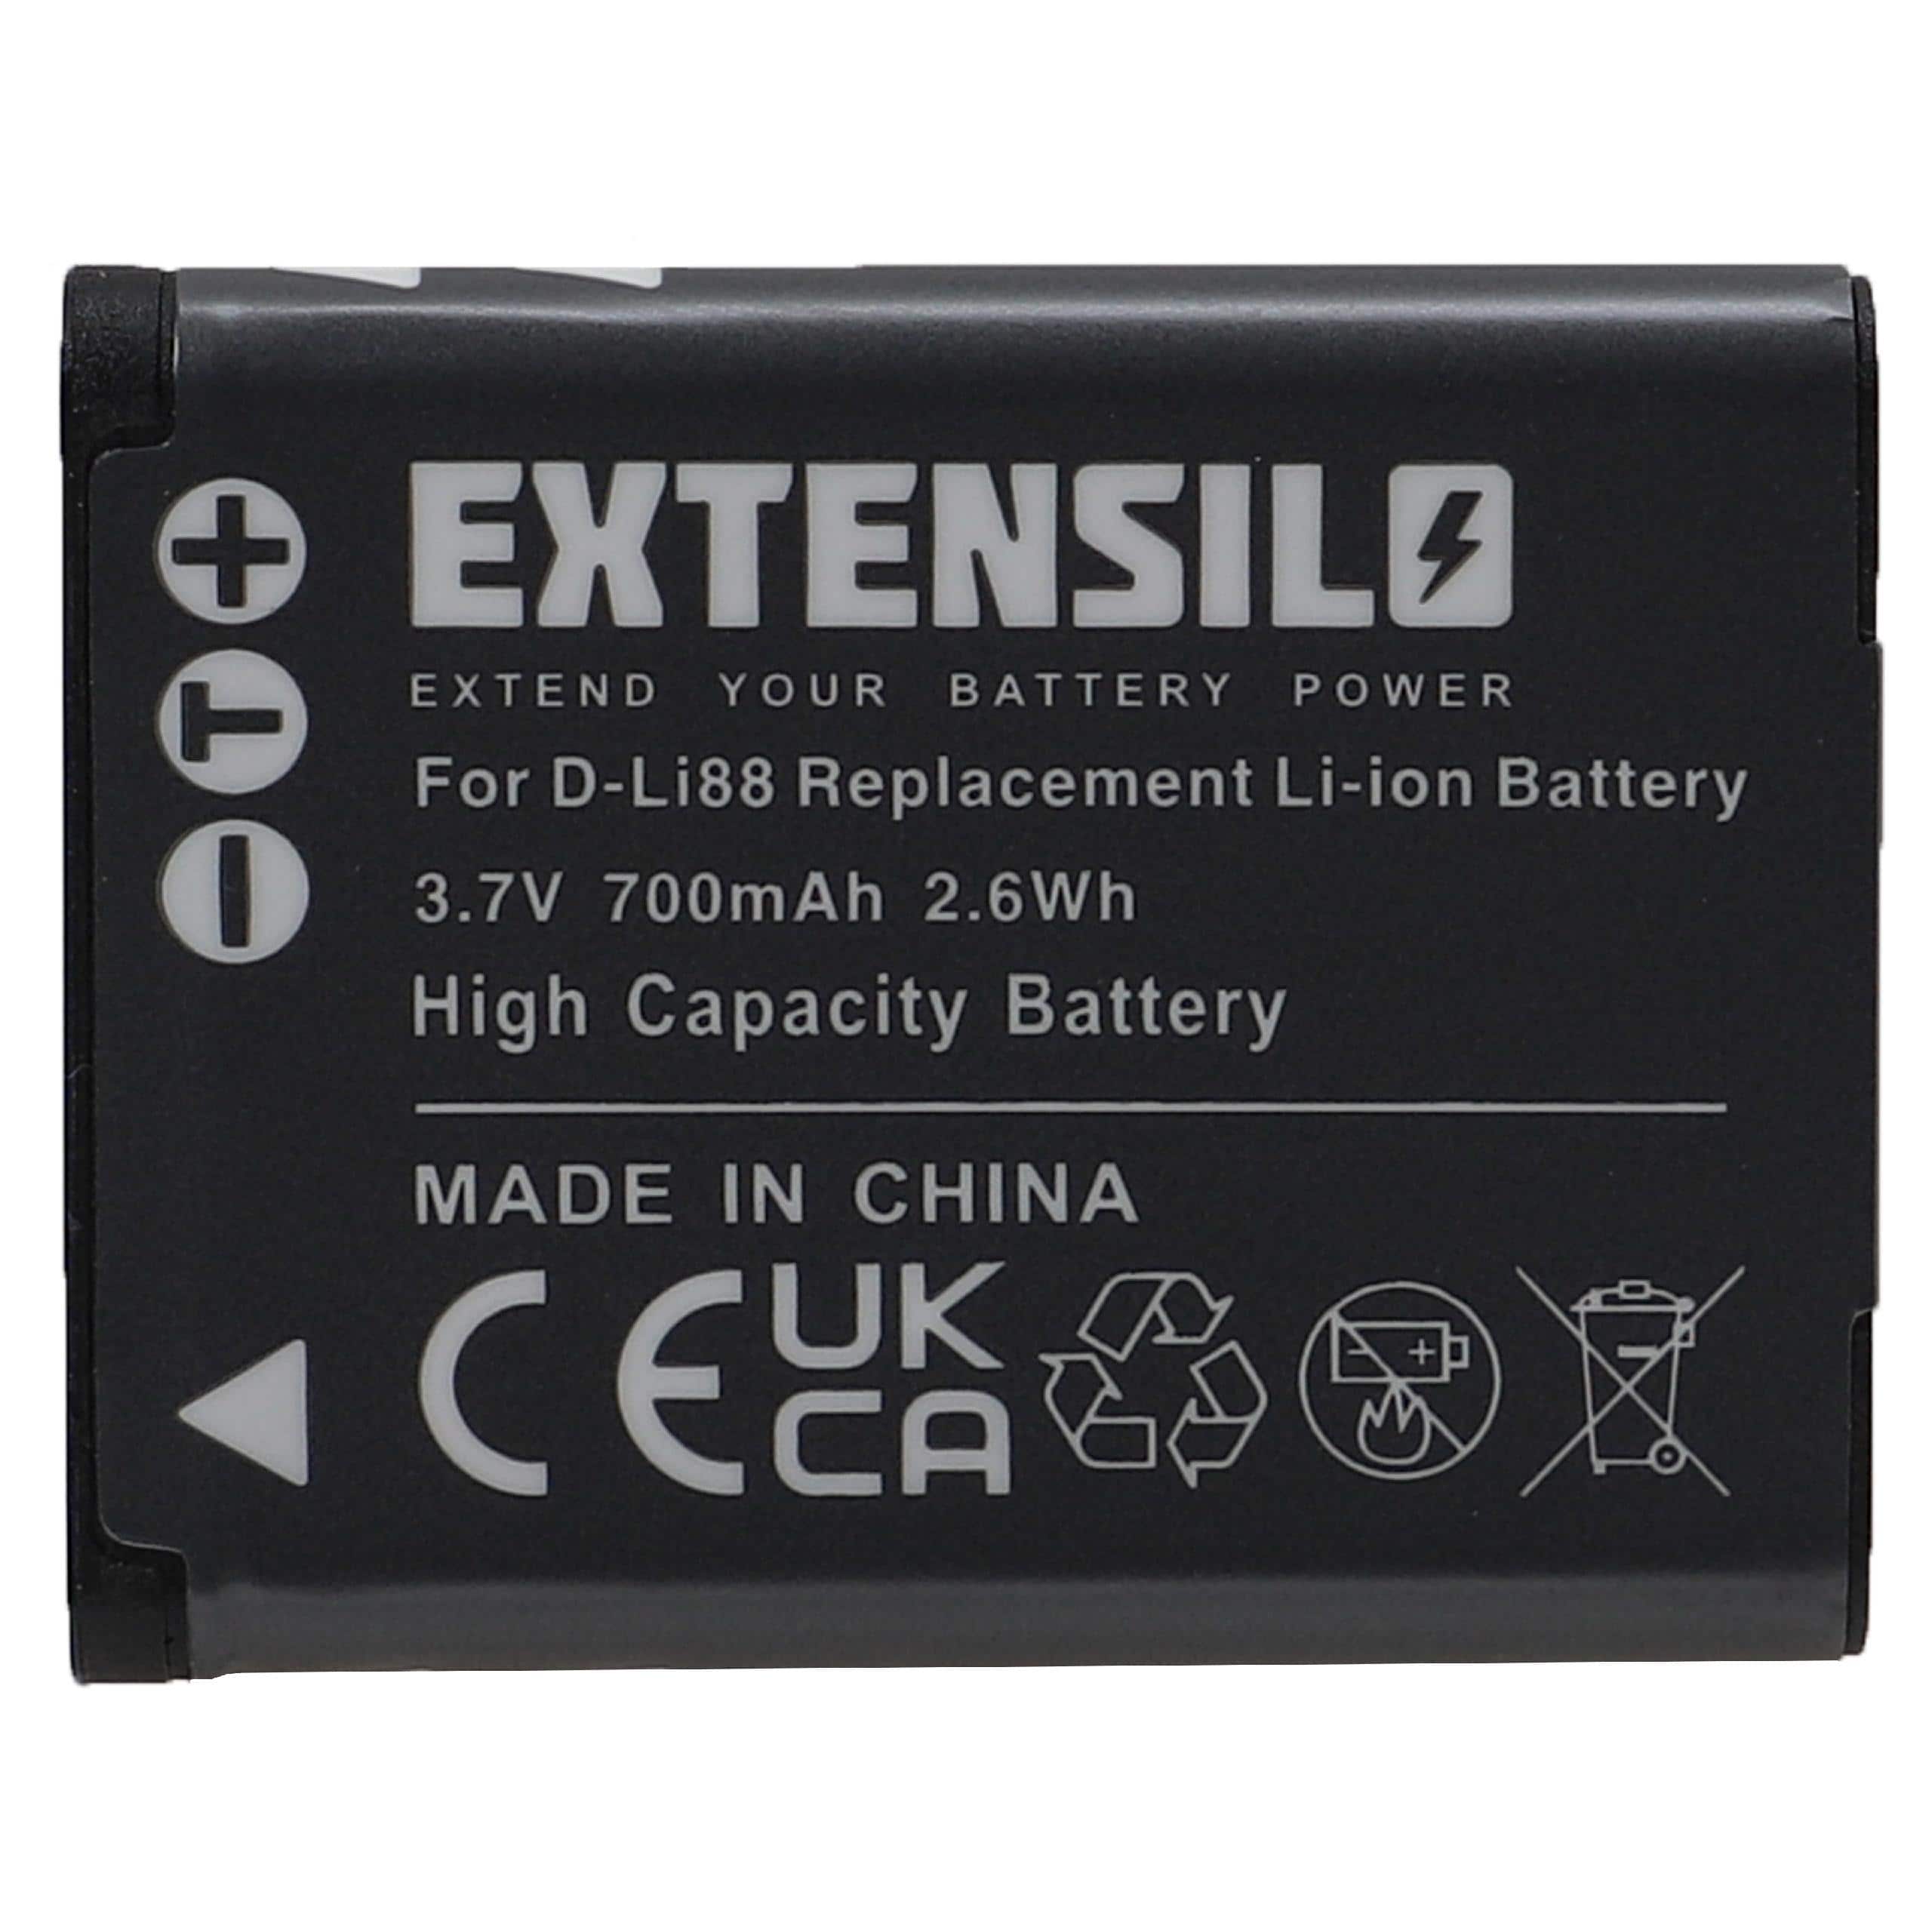 Batterie remplace Panasonic VW-VBX070E, VW-VBX070 pour appareil photo - 700mAh 3,7V Li-ion